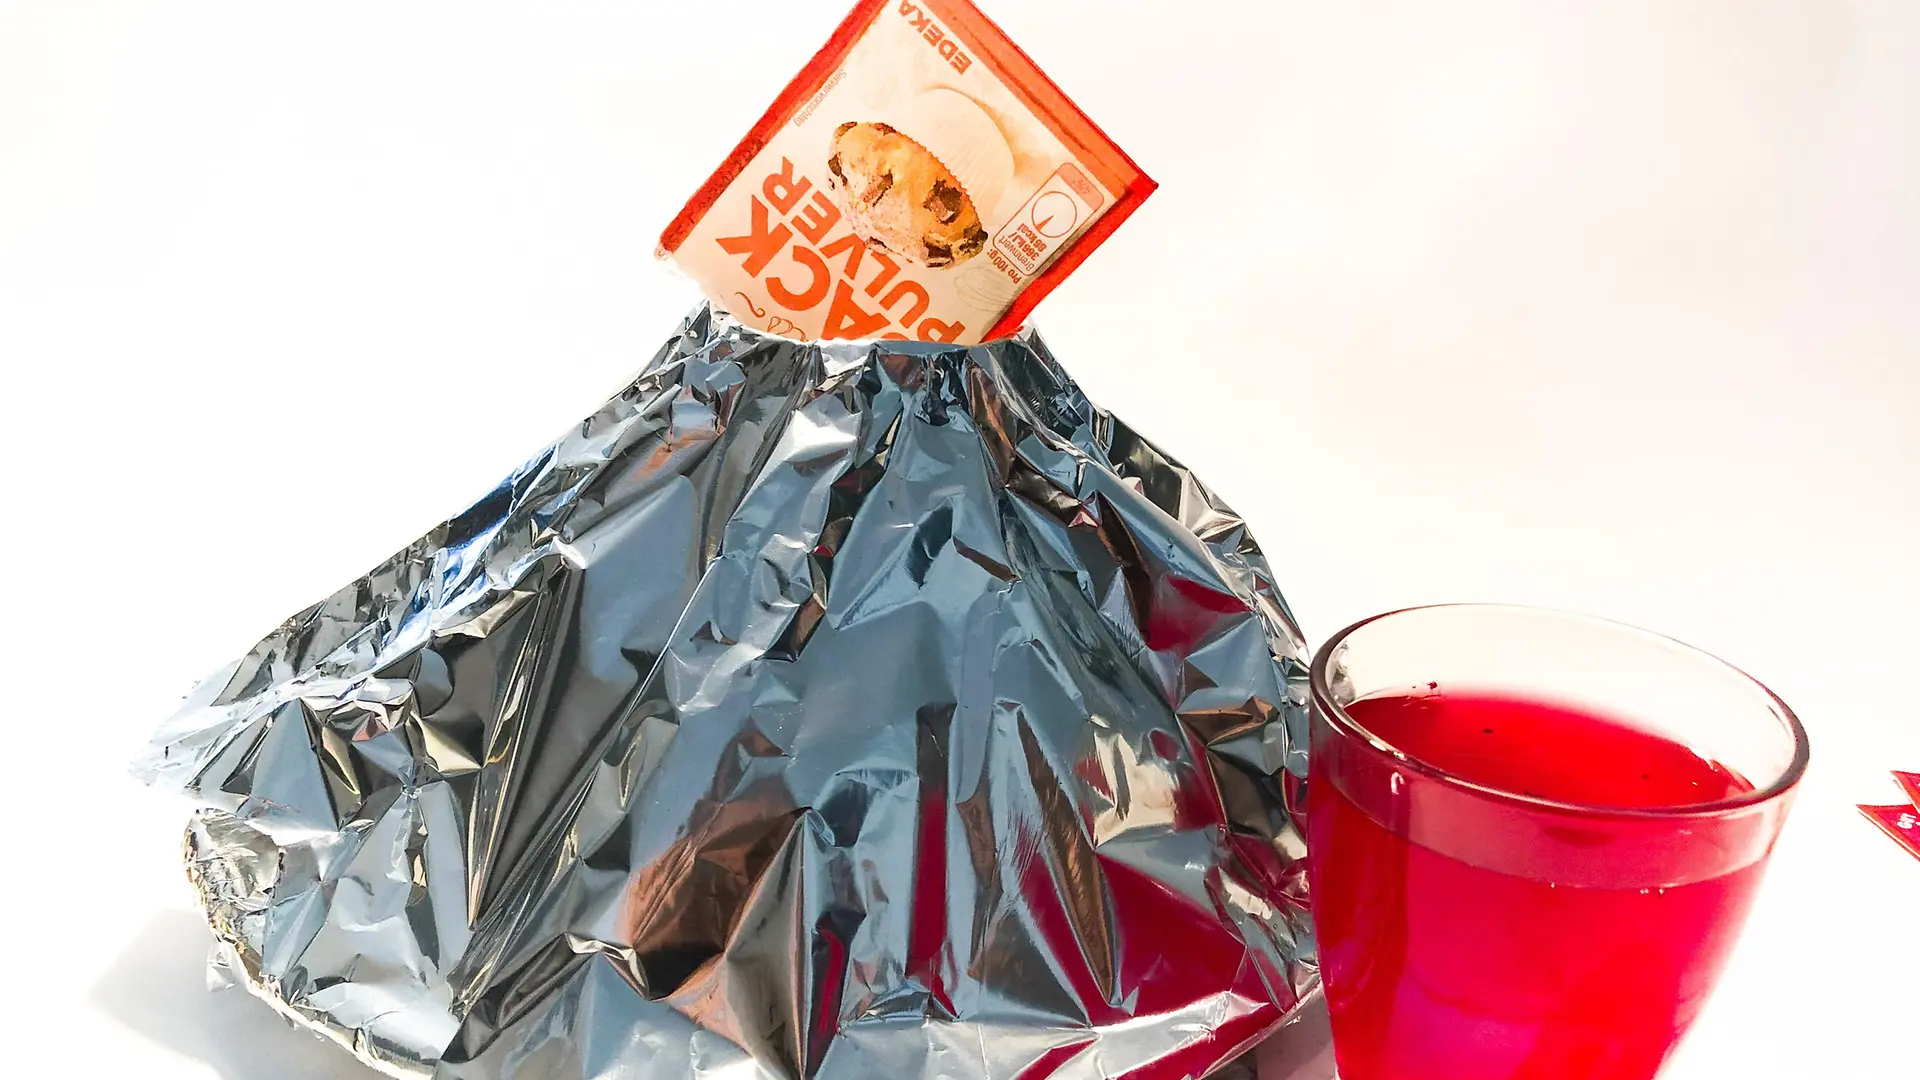 üstte kabartma tozu paketi ve kırmızı su ile dolu cam ile alüminyum folyo konisi